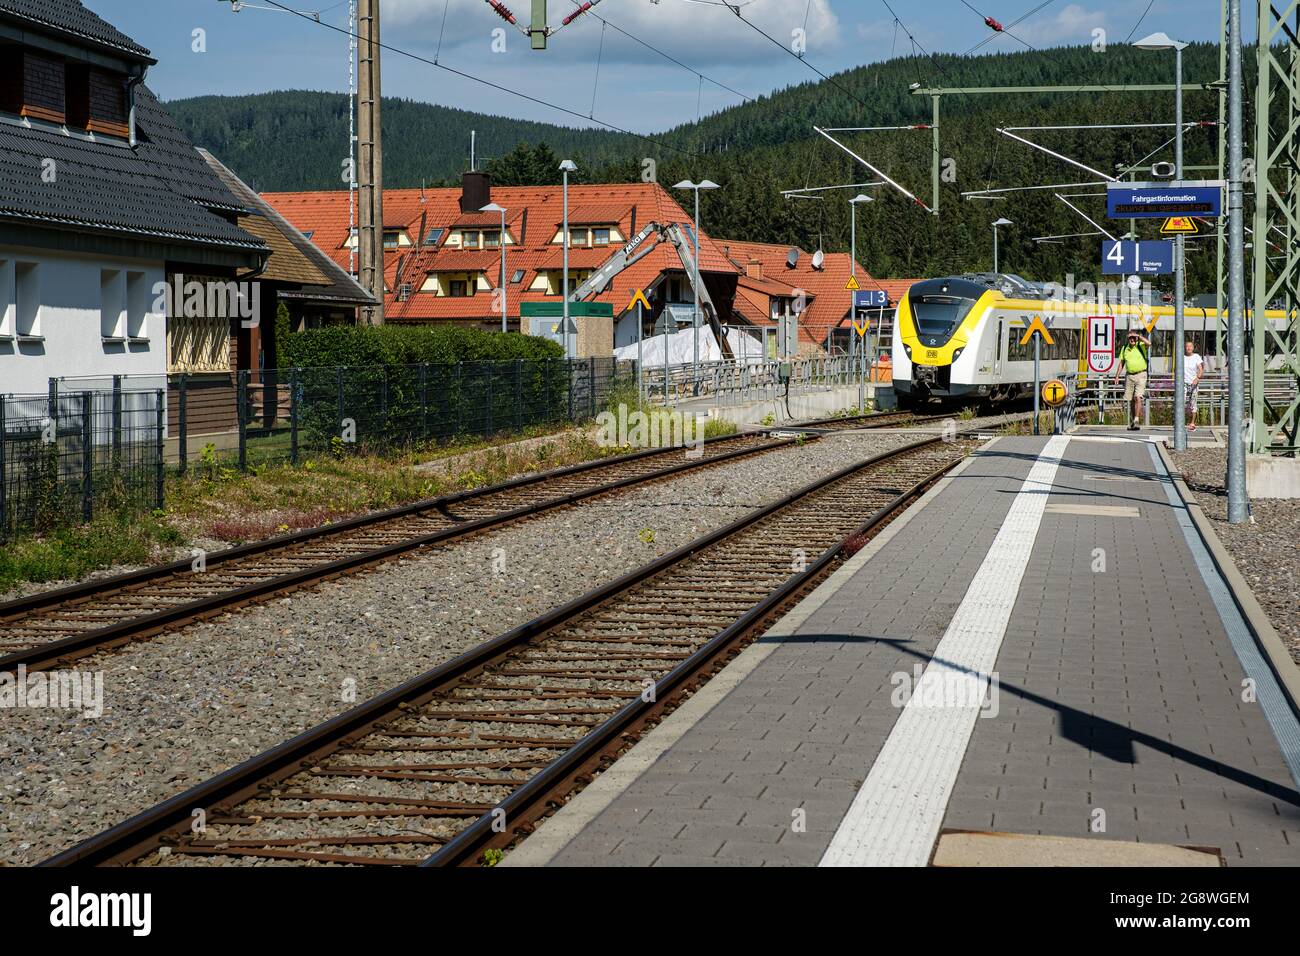 AHA, Baden-Württemberg, Germania - Luglio 28 2020 : moderno treno passeggeri da bwegt (DB regio) che arriva alla stazione ferroviaria di Aha Foto Stock